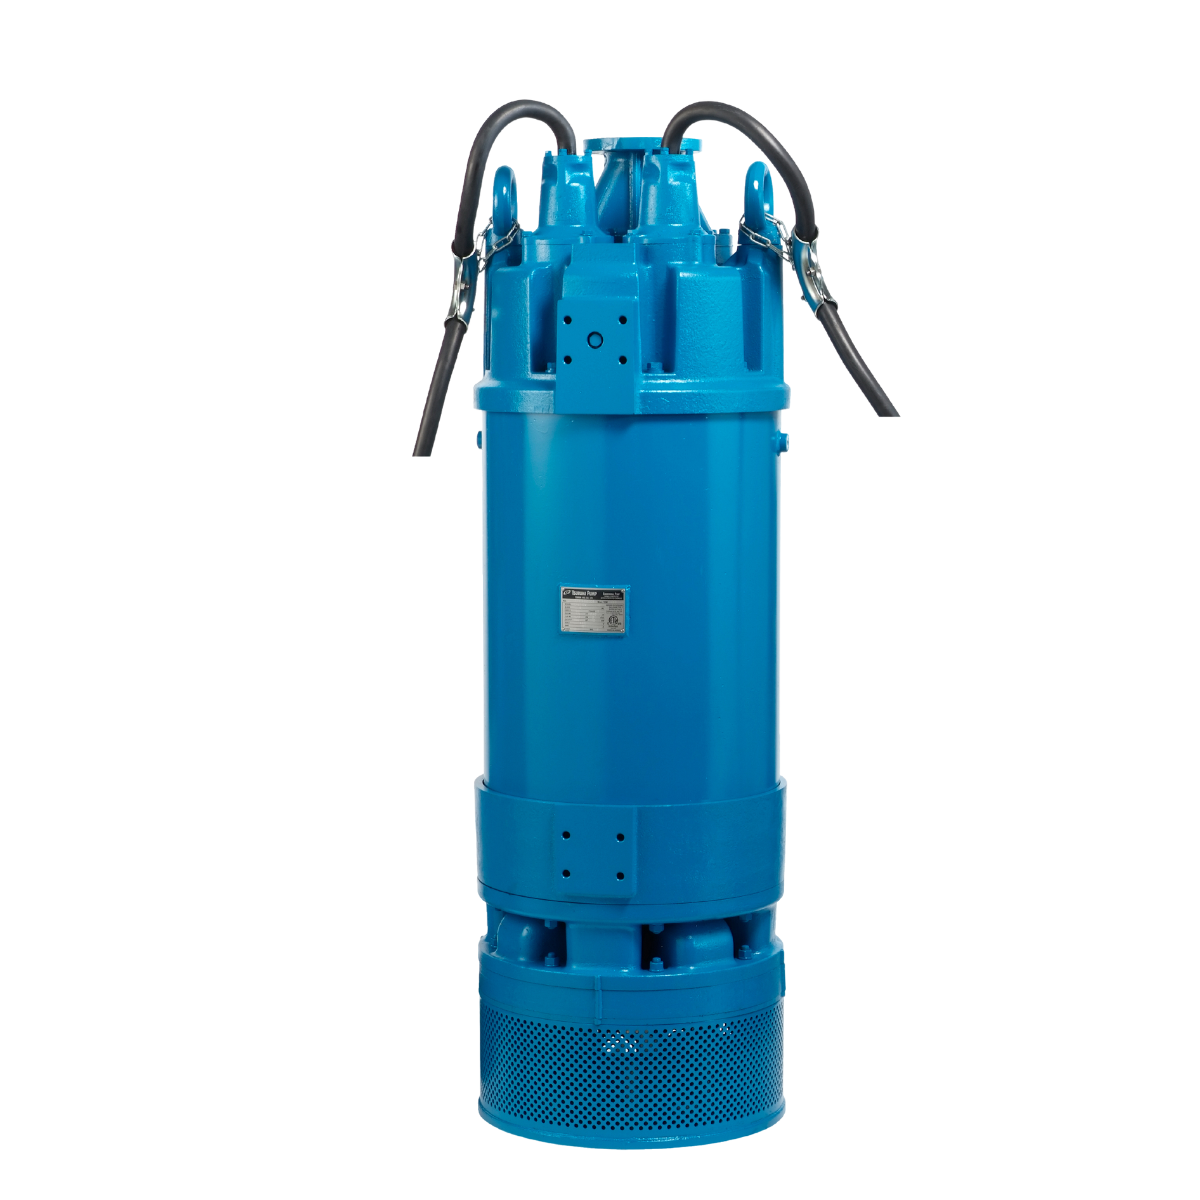 Tsurumi pump product model LH4110W